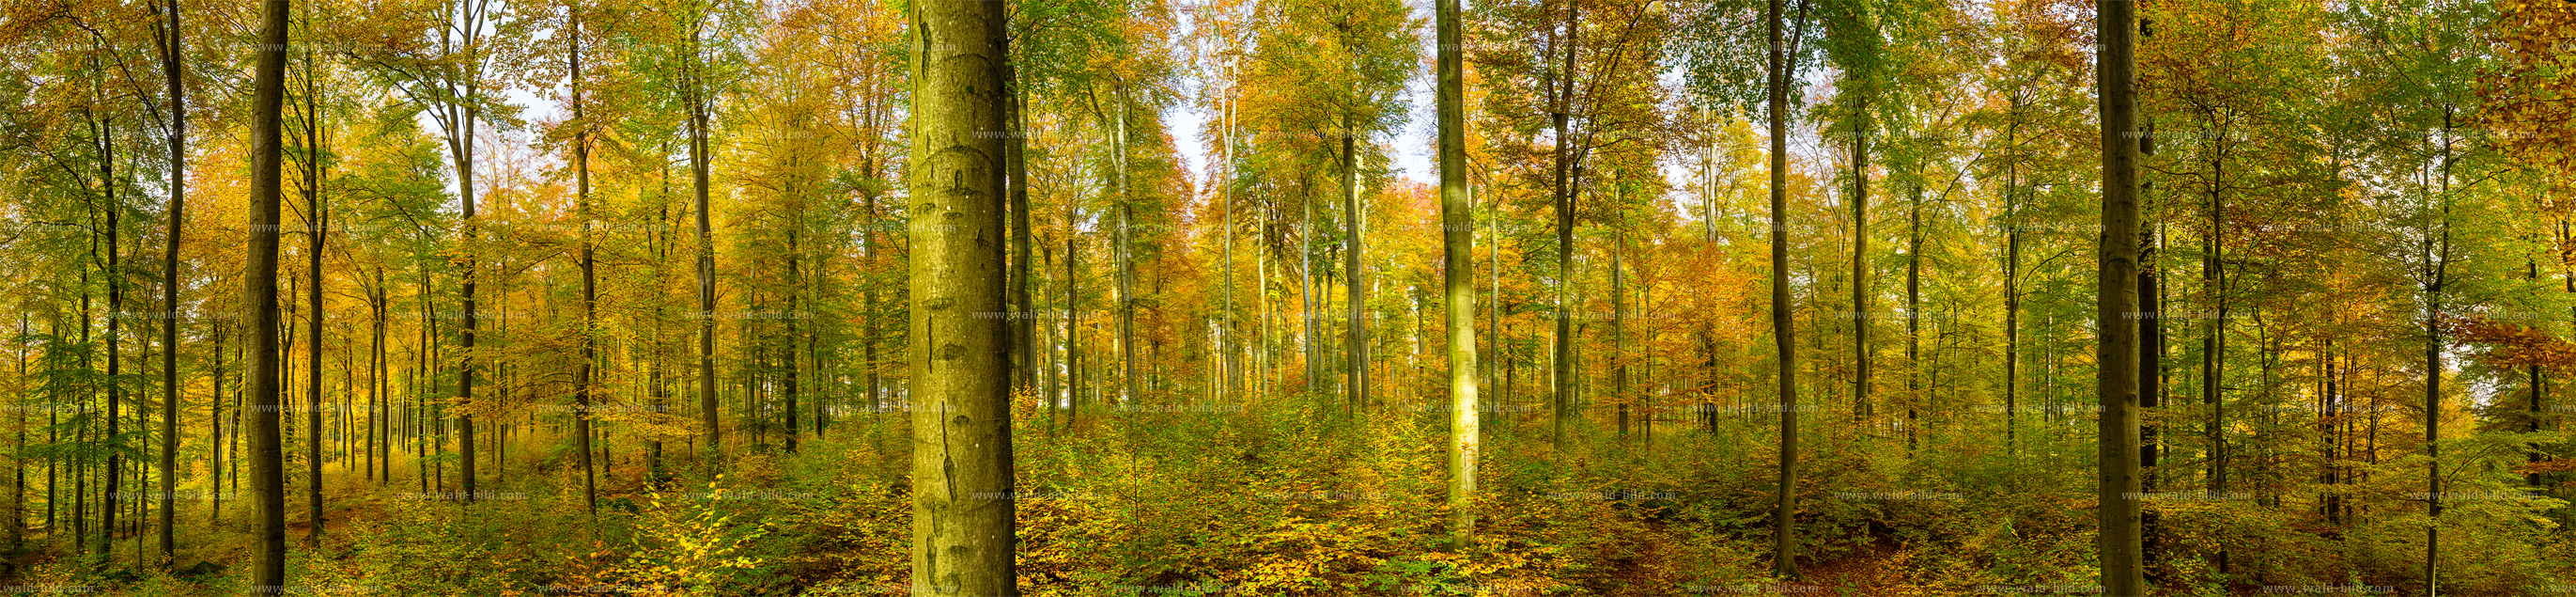 Bild Wald Herbst